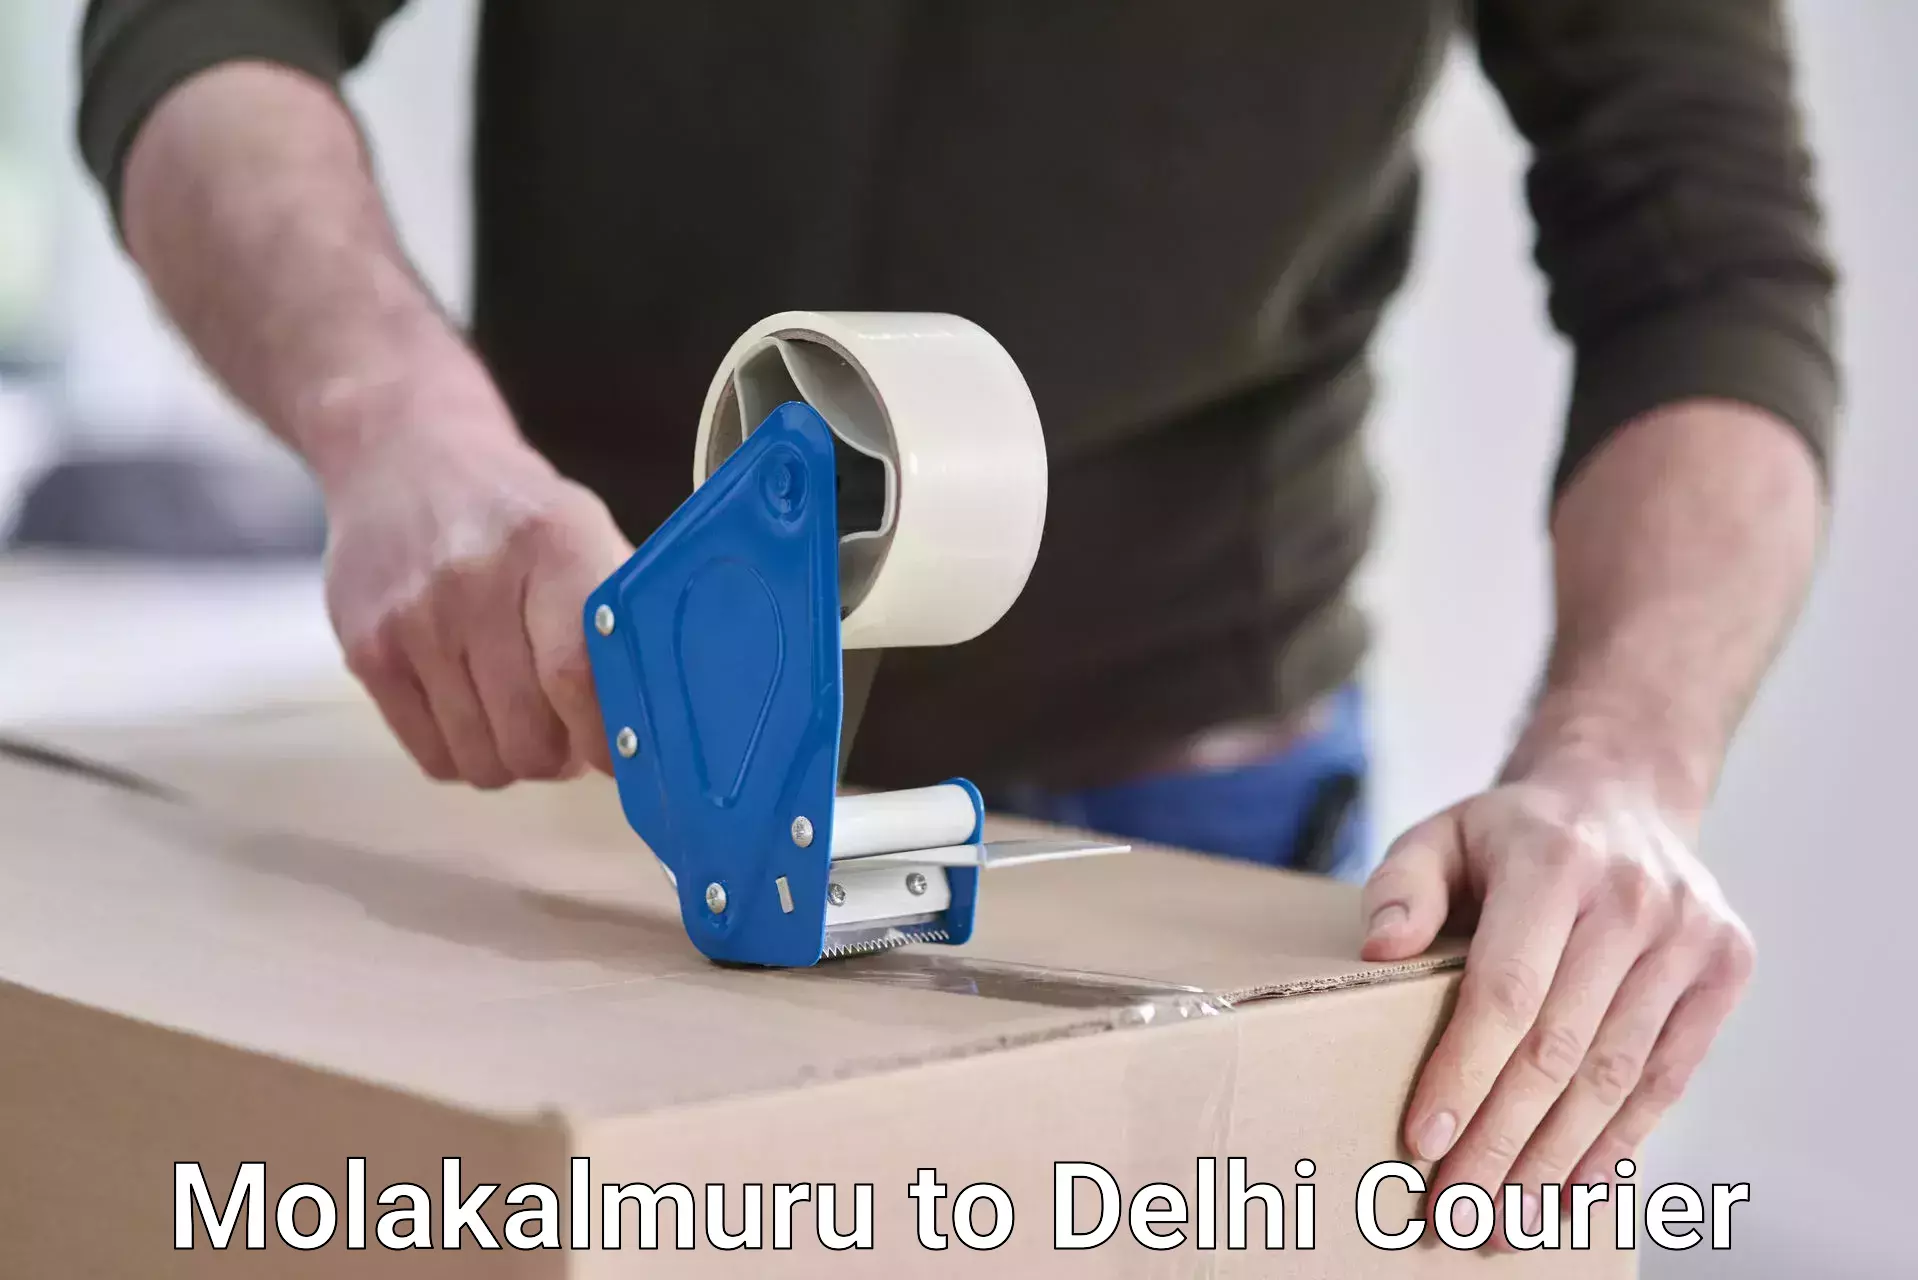 Smart shipping technology Molakalmuru to NIT Delhi